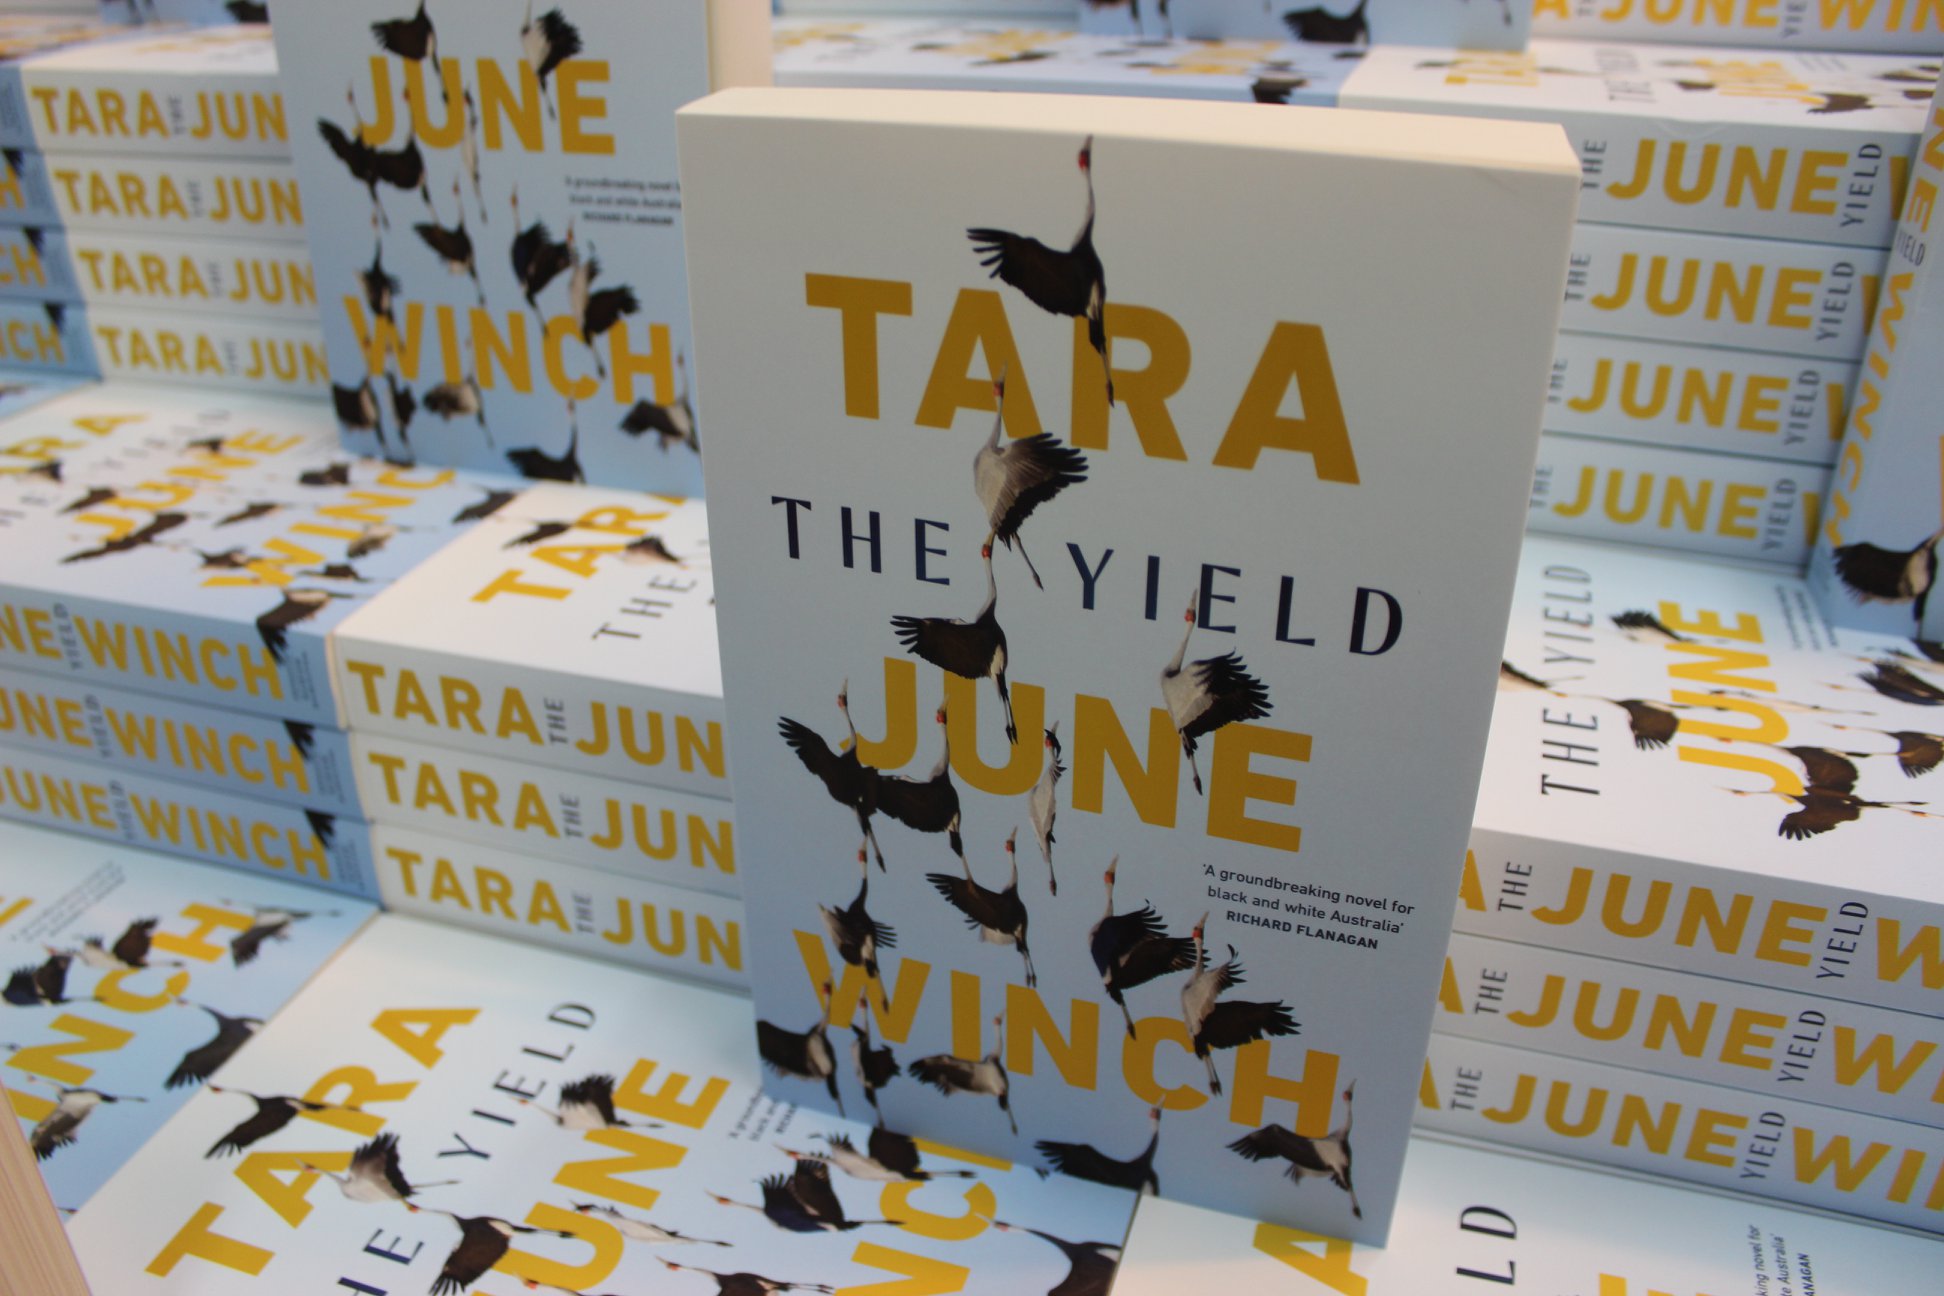 the yield by tara june winch analysis